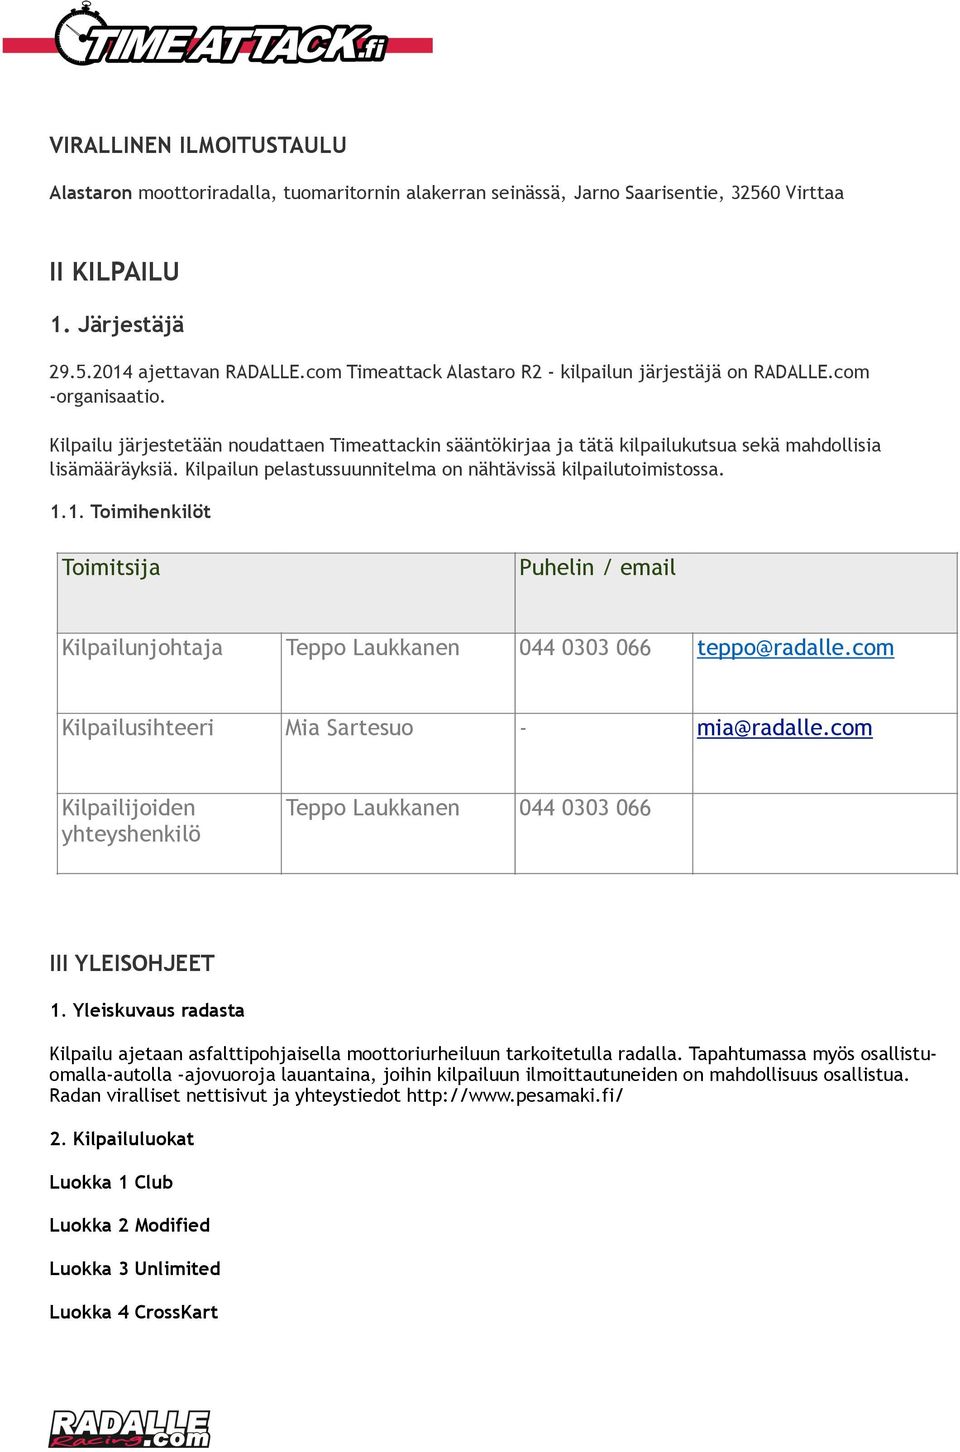 Kilpailun pelastussuunnitelma on nähtävissä kilpailutoimistossa. 1.1. Toimihenkilöt Toimitsija Puhelin / email Kilpailunjohtaja Teppo Laukkanen 044 0303 066 teppo@radalle.